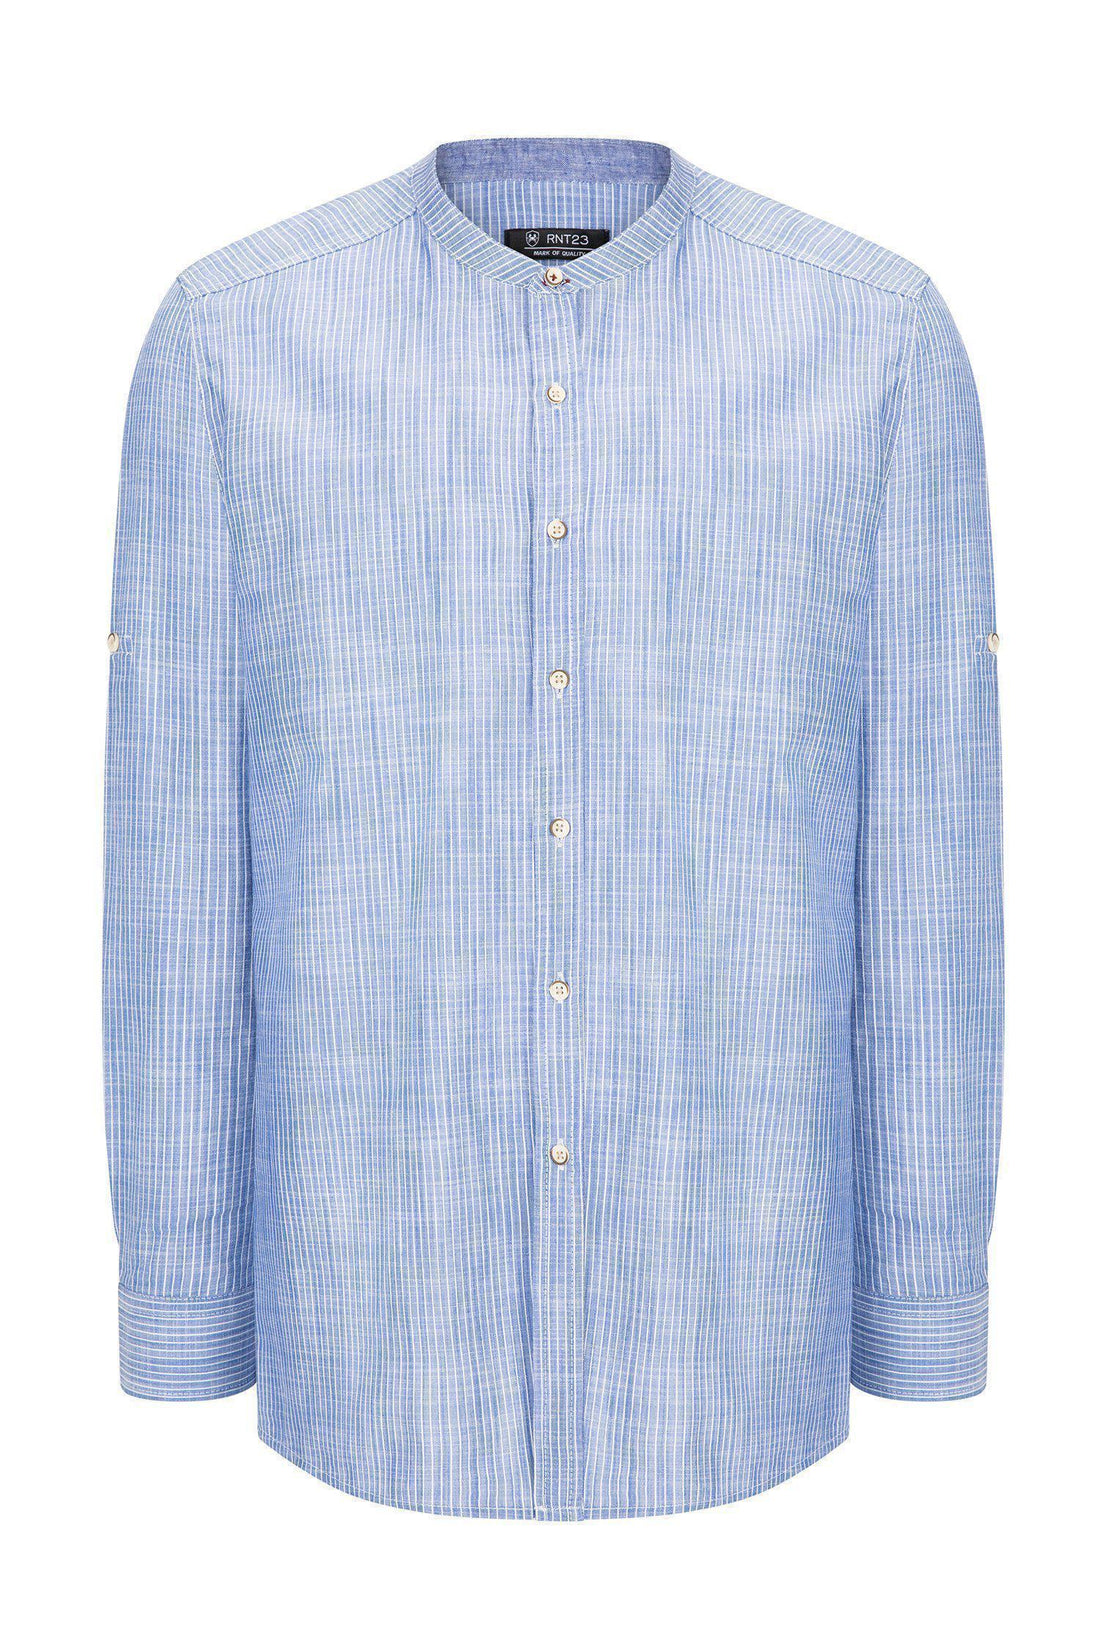 Striped Cotton Shirt - DARK BLUE - Ron Tomson